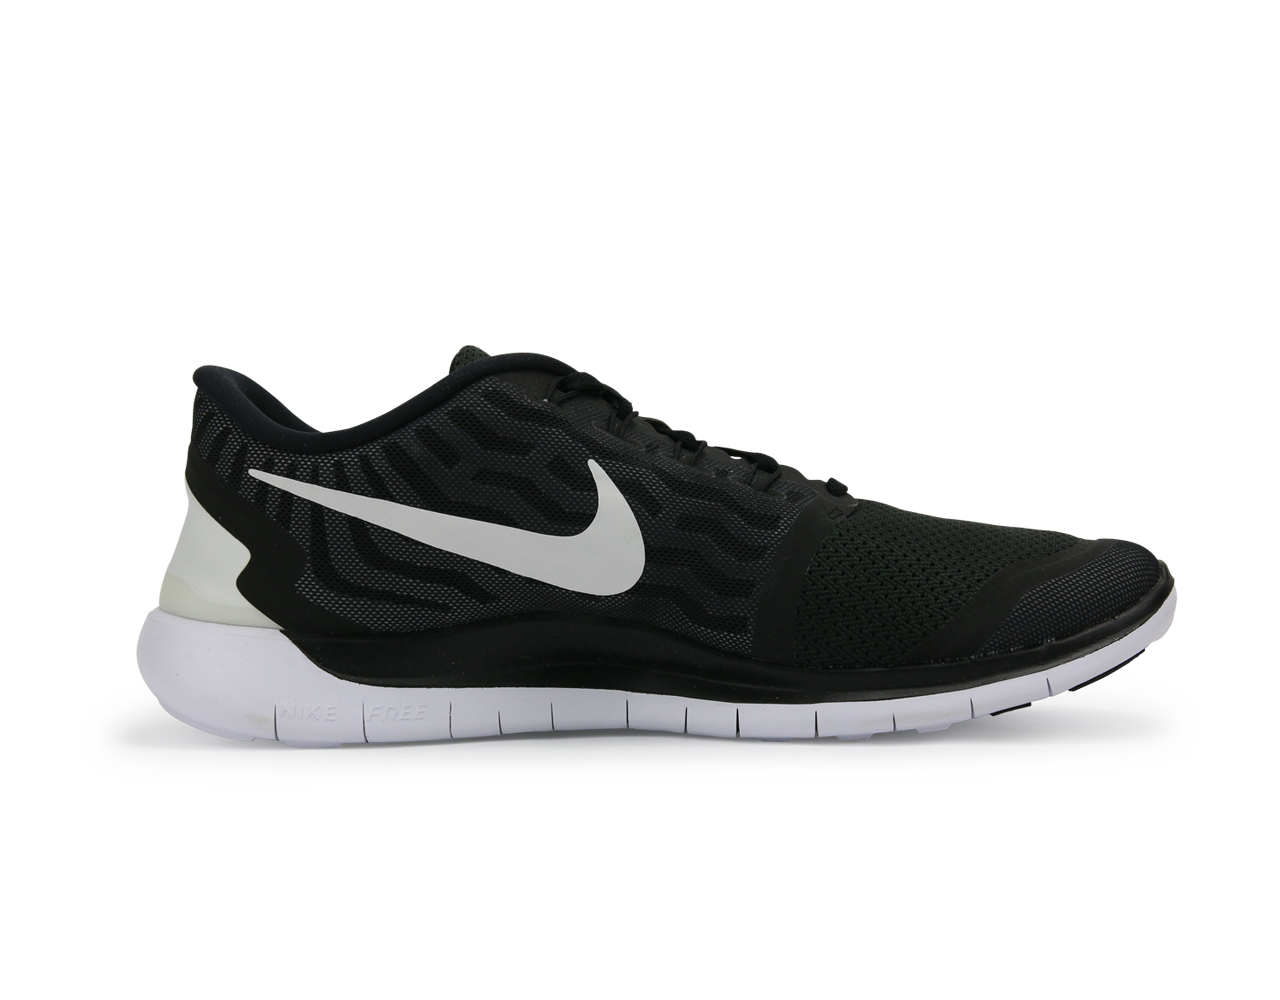 Nike Men's Free 5.0 Running Shoes Black/White/Dark Grey